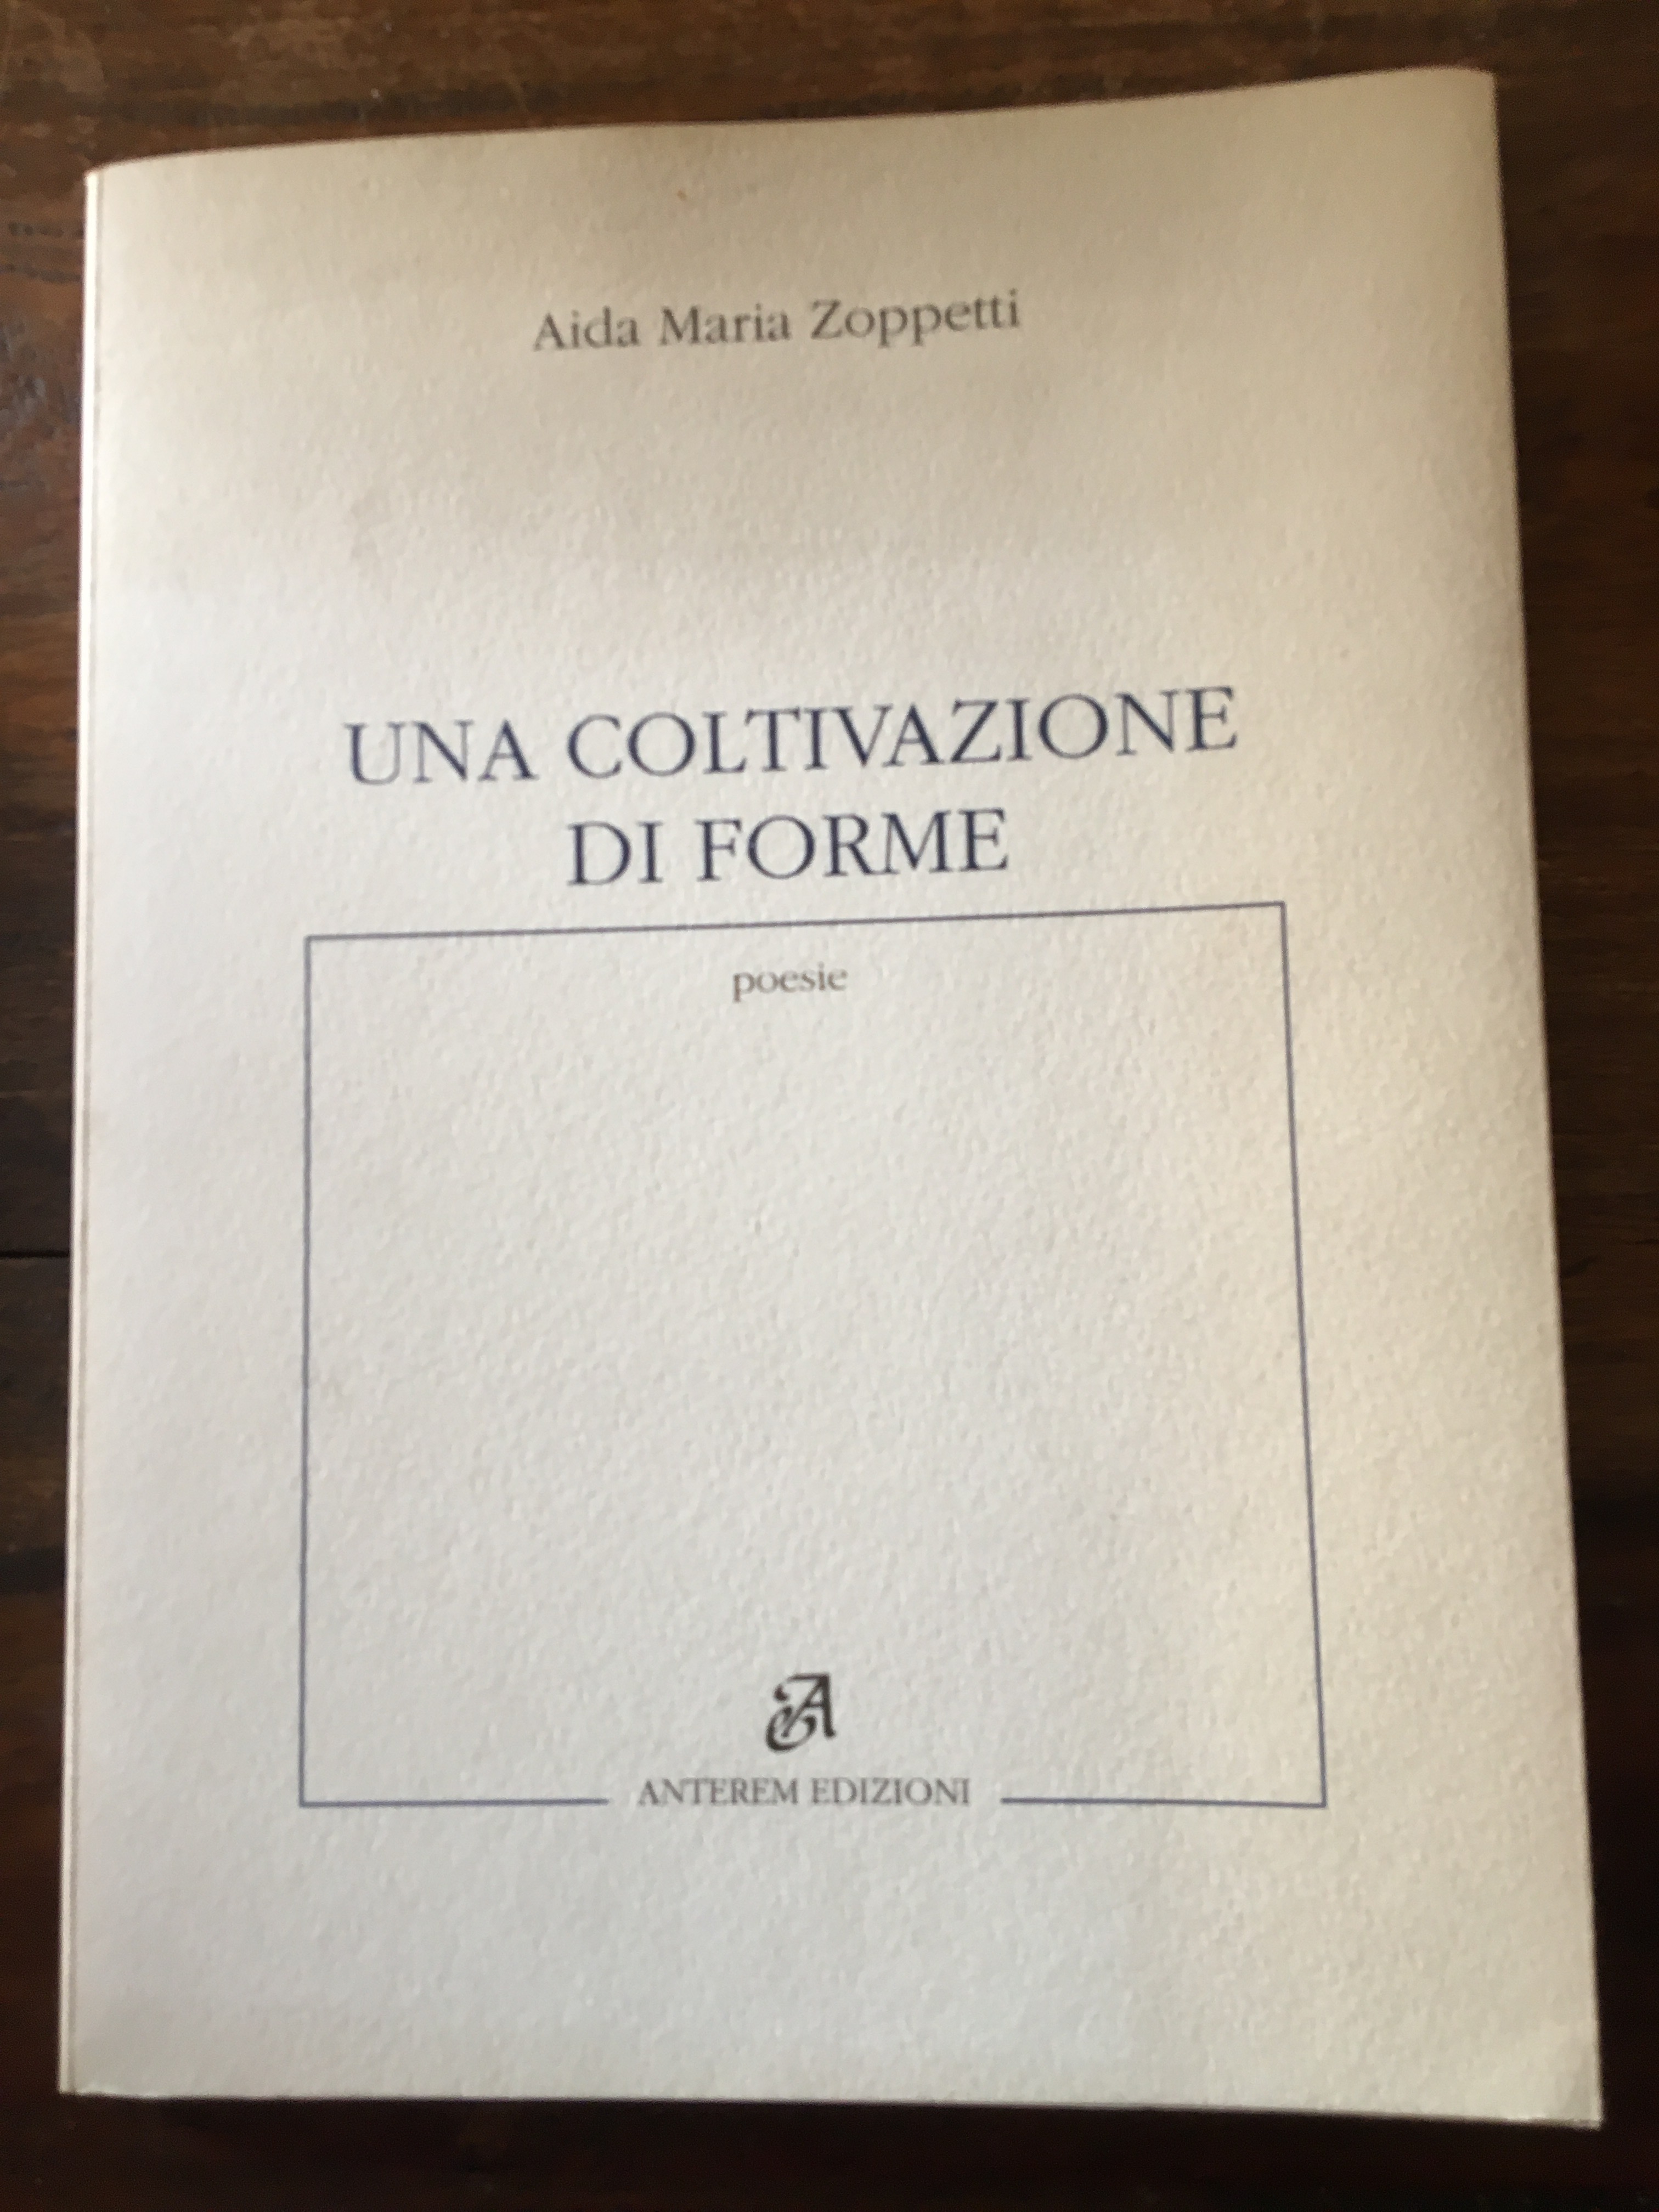 Aida M. Zoppetti, due libri, frammenti critici e biografia